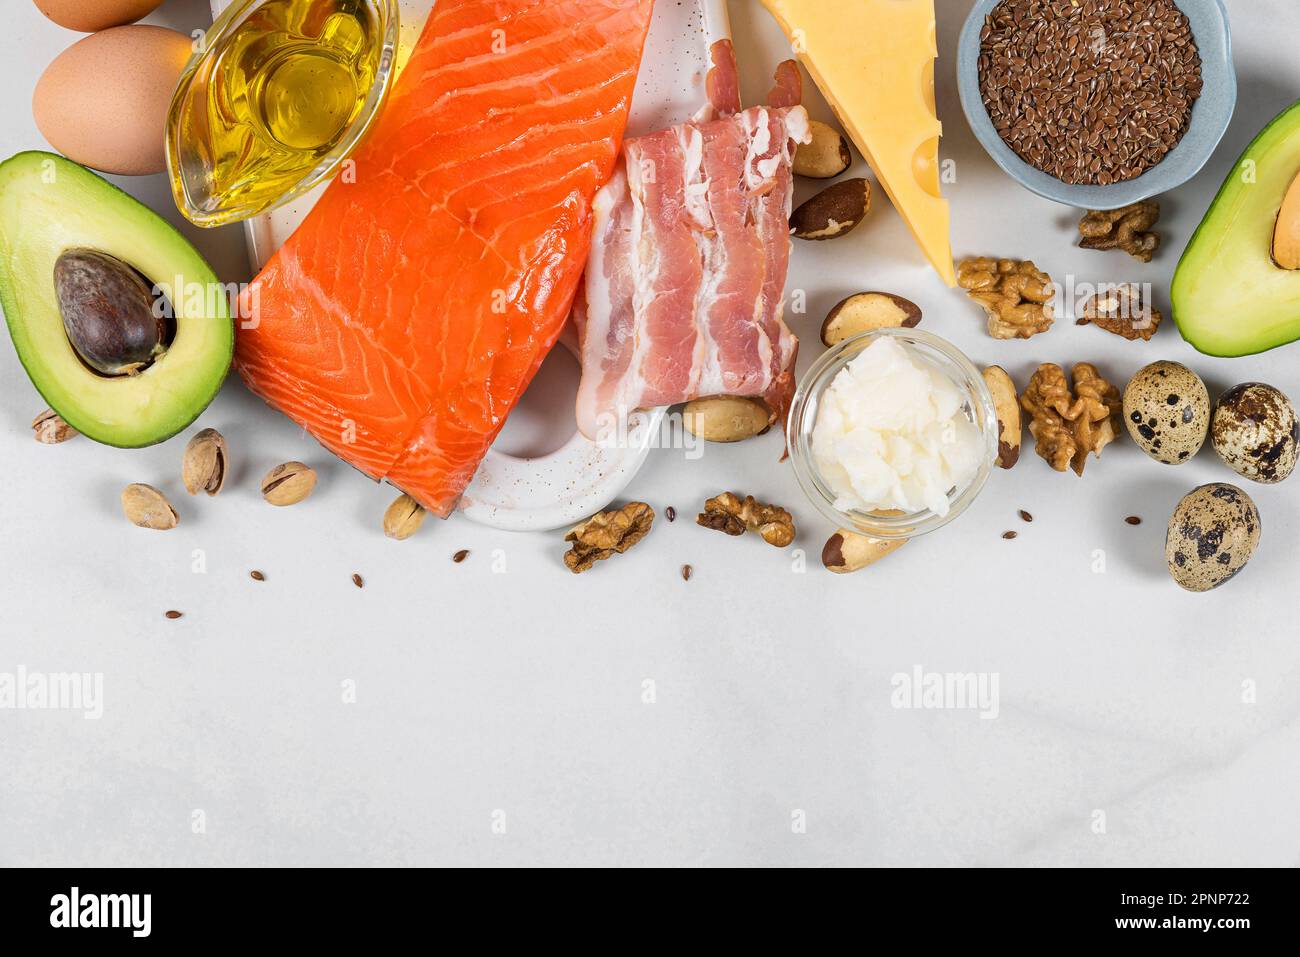 Dieta chetogenica a basso contenuto di carboidrati con alimenti ricchi di grassi sani e proteine su sfondo bianco. Vista dall'alto con spazio di copia. Dieta paleo Foto Stock